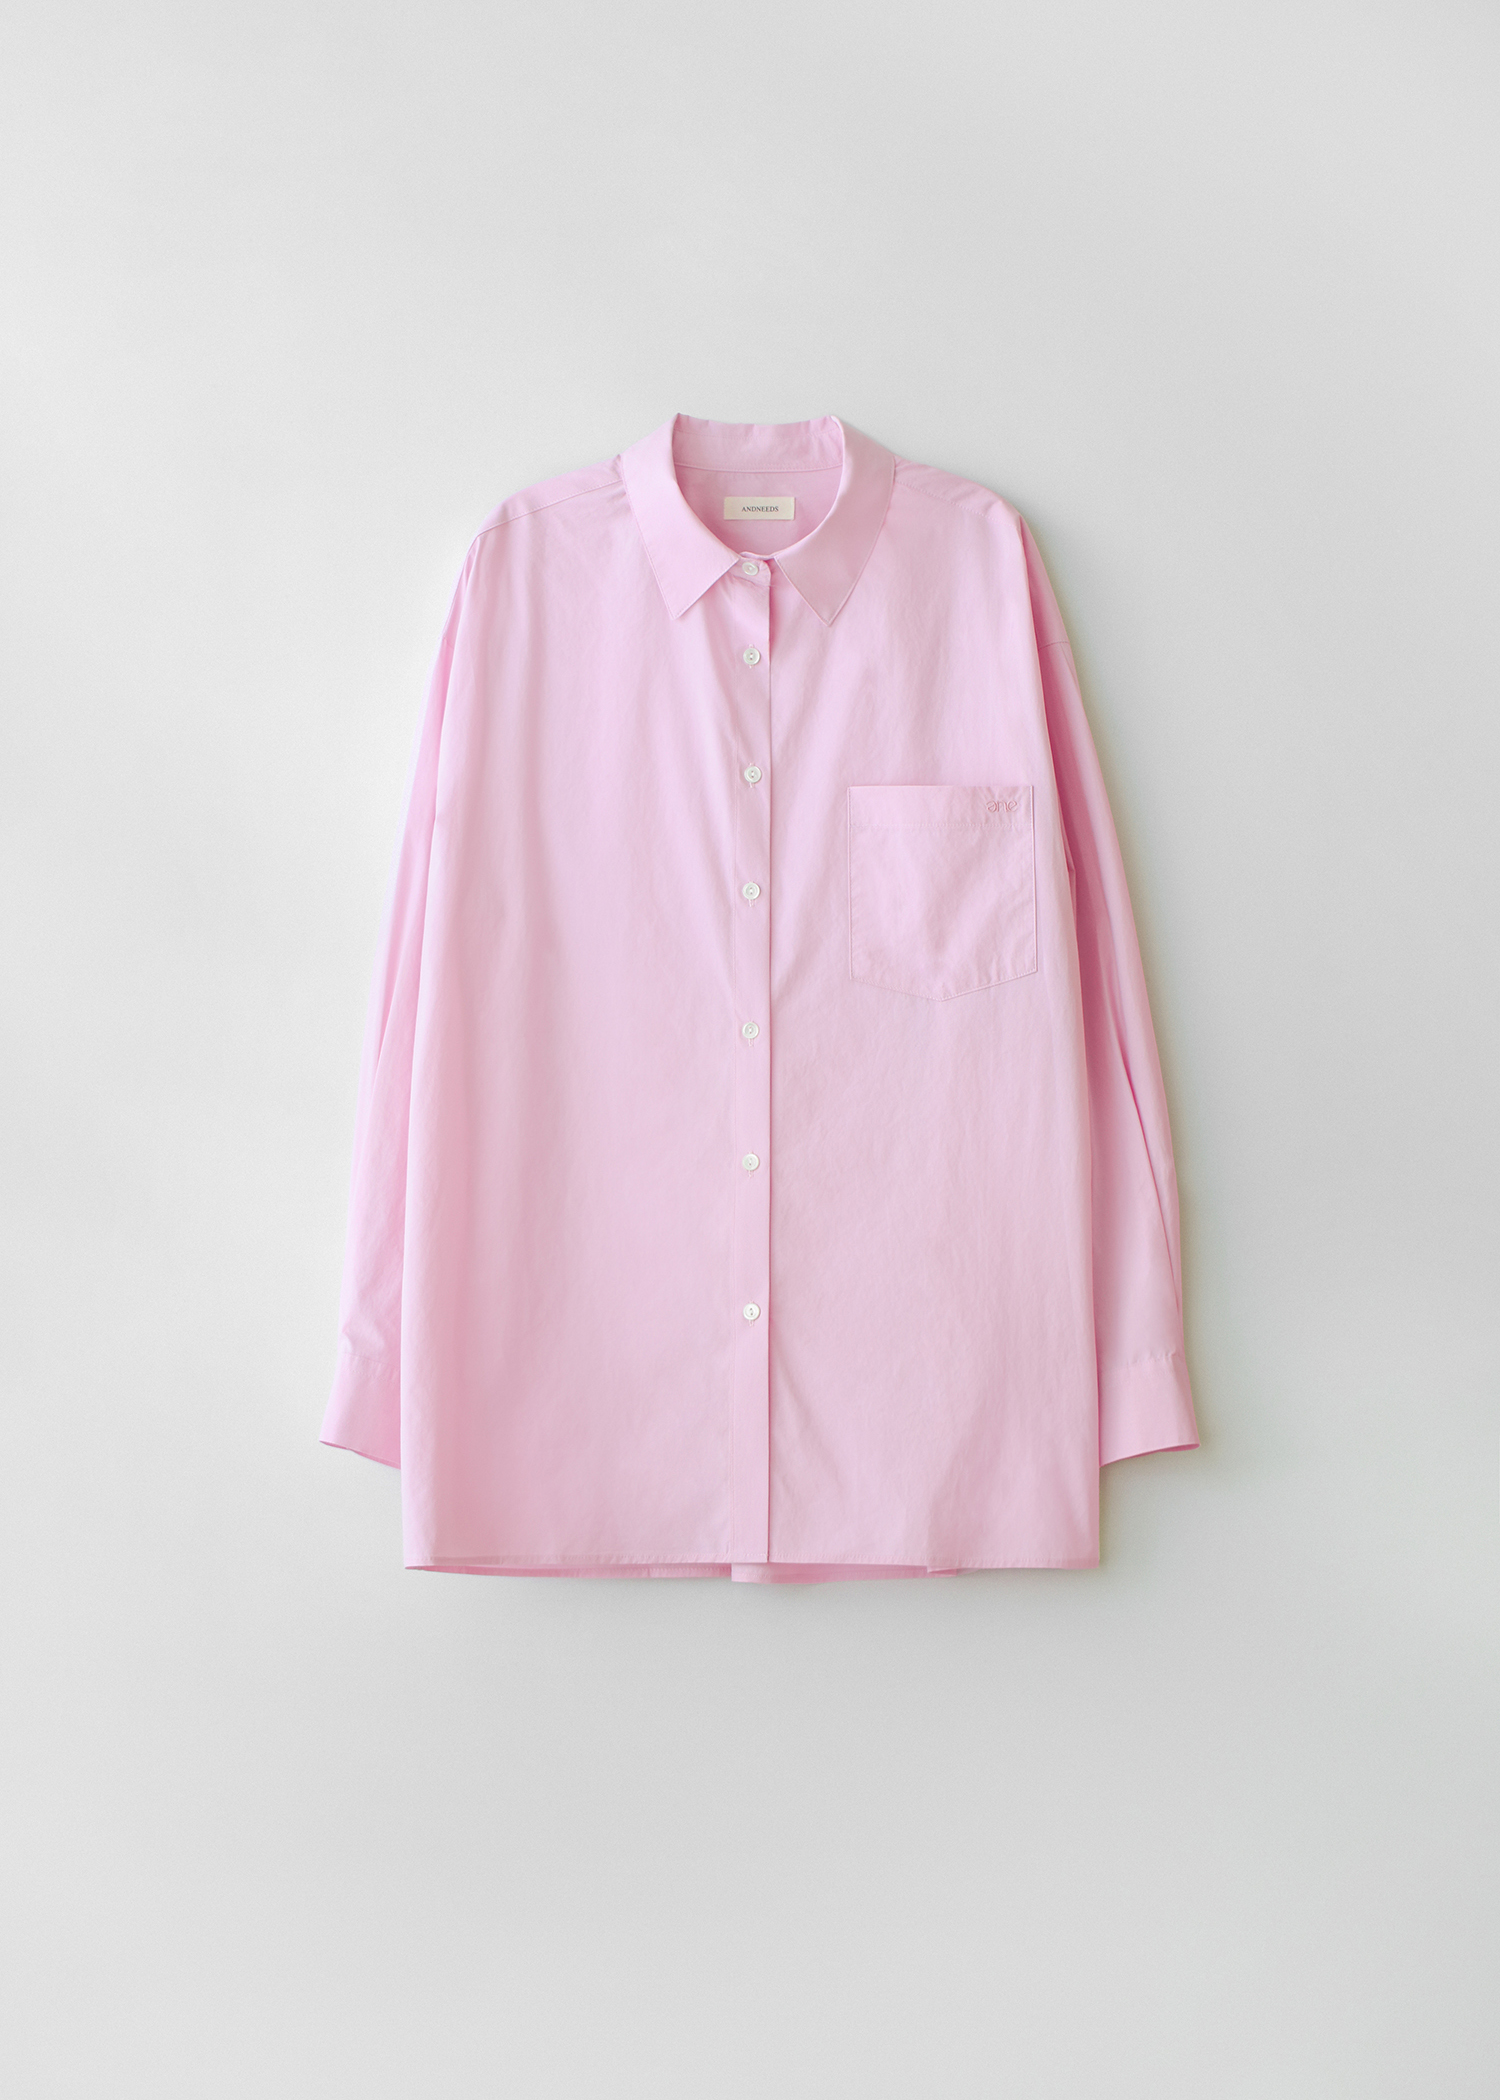 Bio cotton shirt (pink)